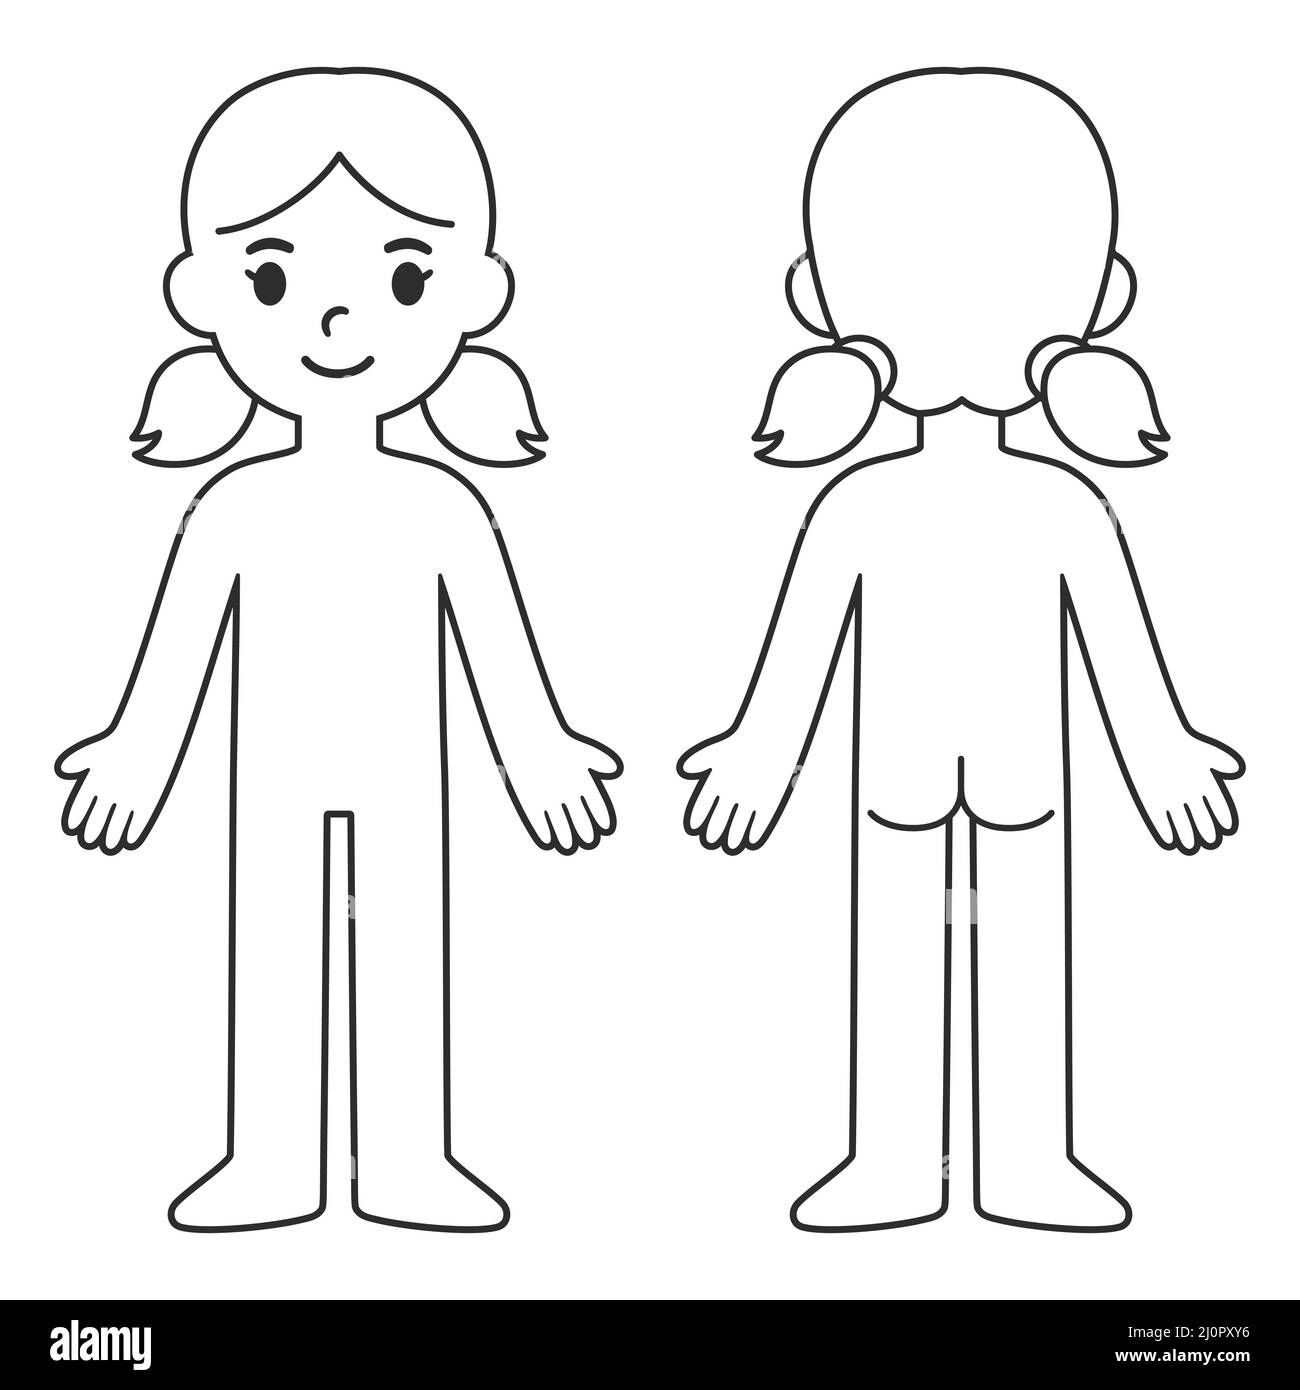 Cartoon-Body-Chart für Kinder, Vorder- und Rückansicht. Leere Mädchen Körper skizzieren Vorlage. Isolierte Vektordarstellung. Stock Vektor